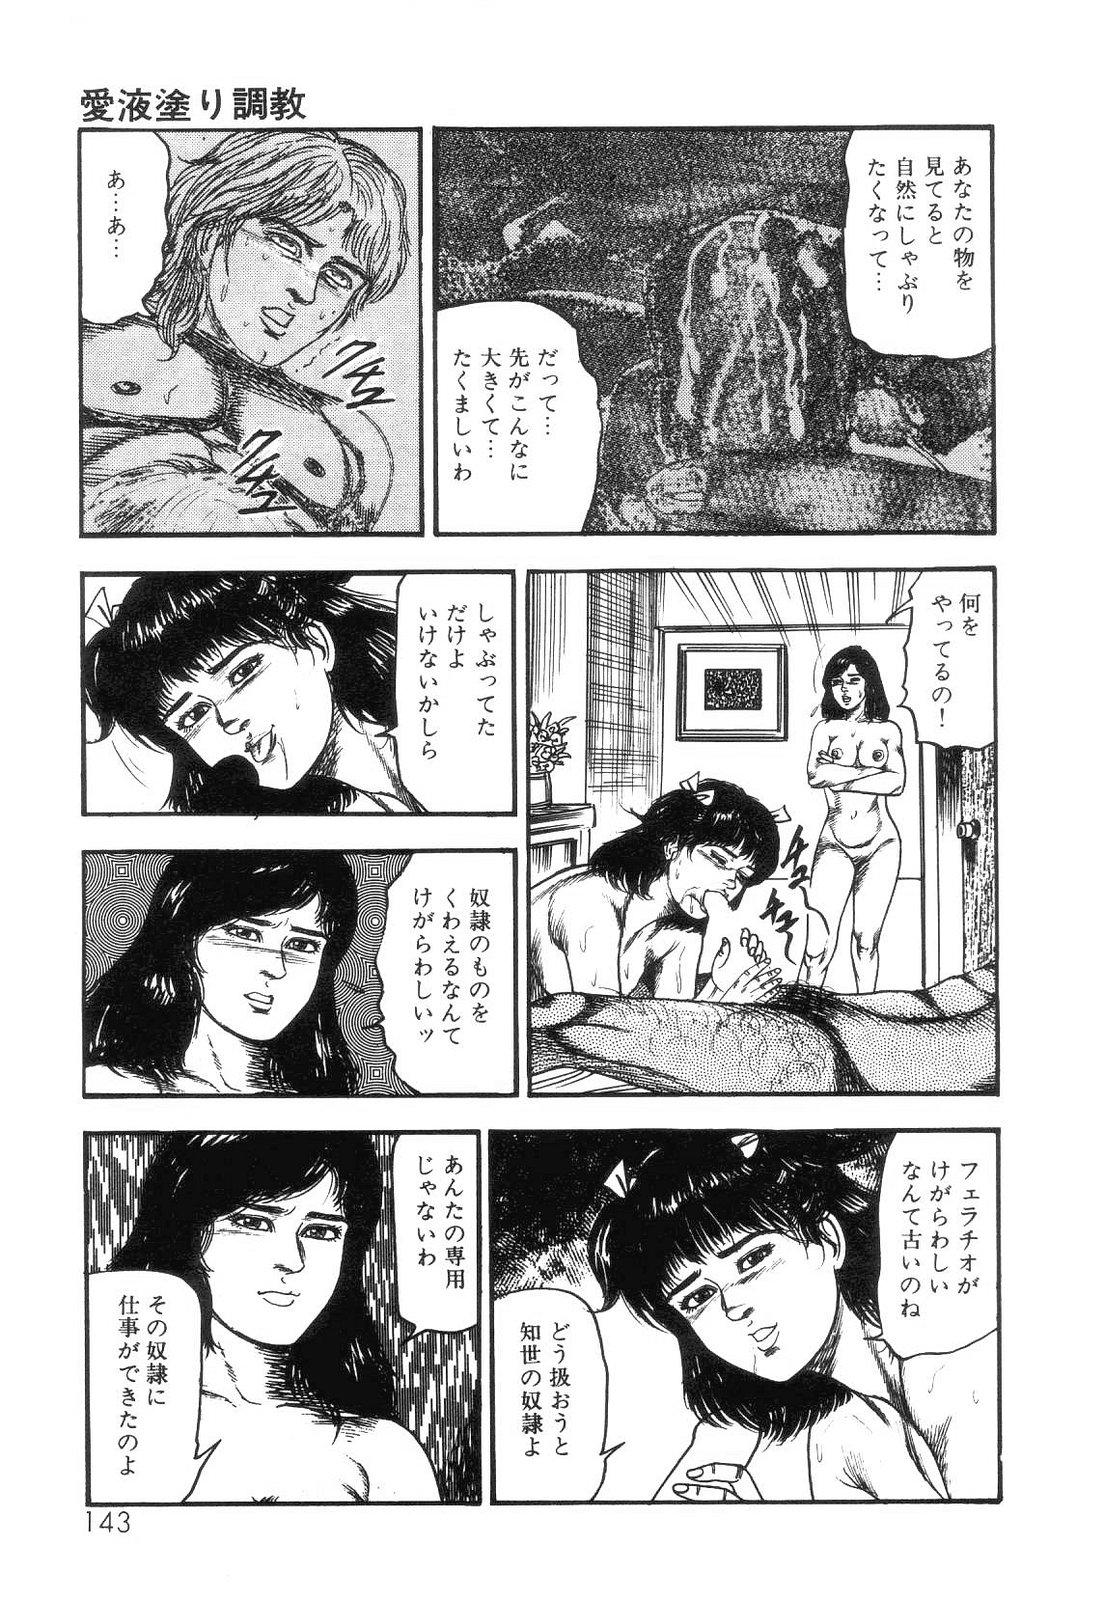 Shiro no Mokushiroku Vol. 4 - Bichiku Karen no Shou 144